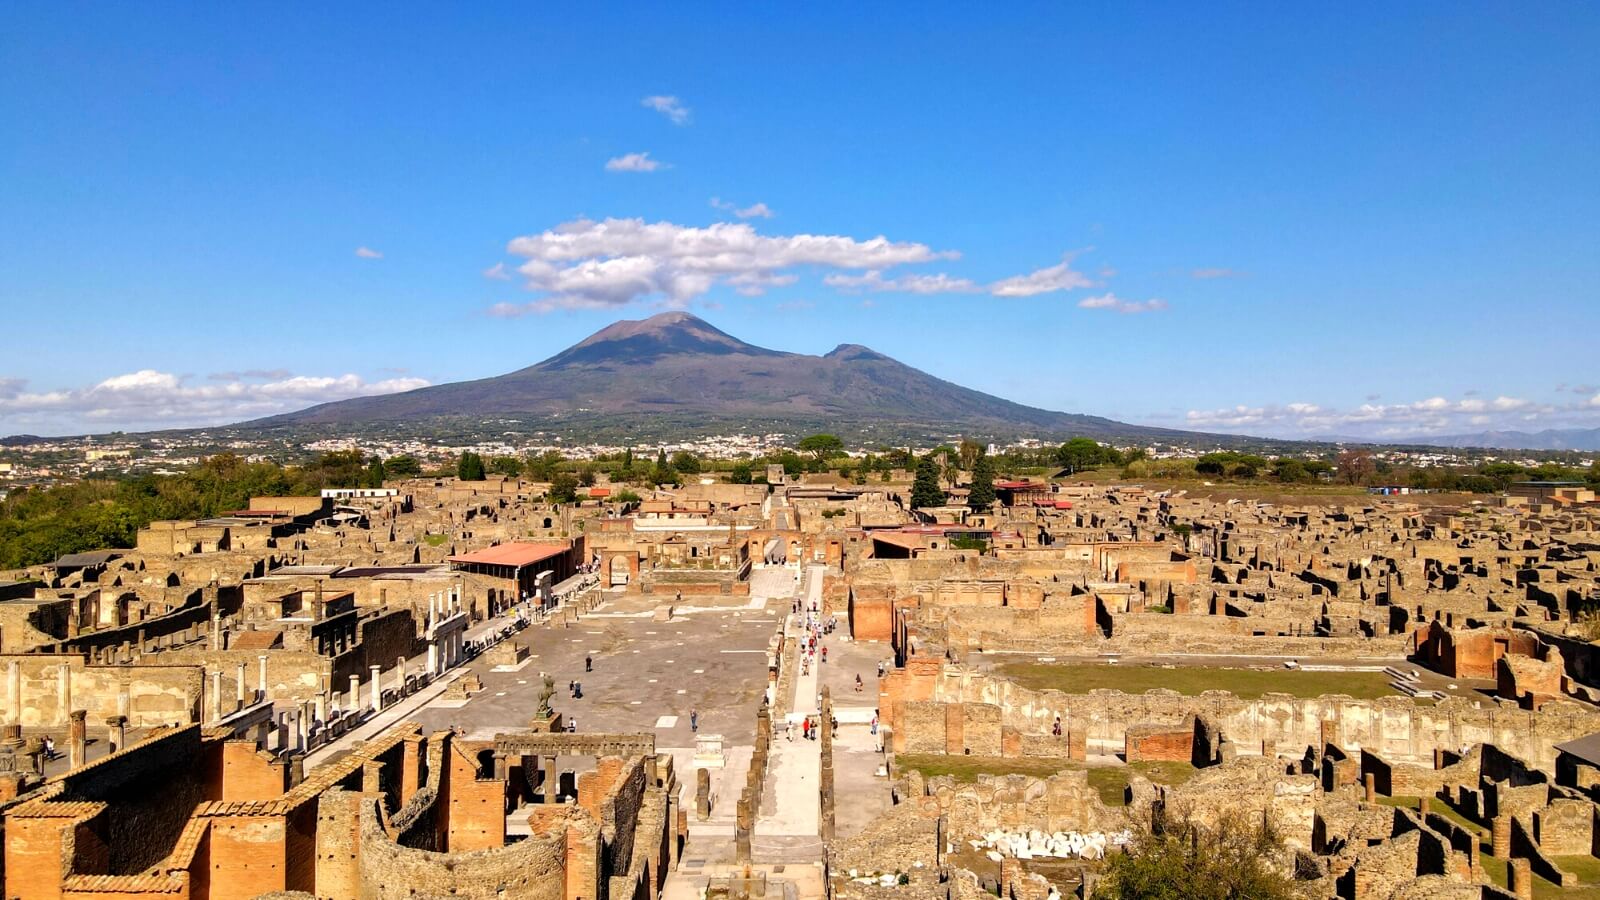 Scavi Archeologici di Pompei